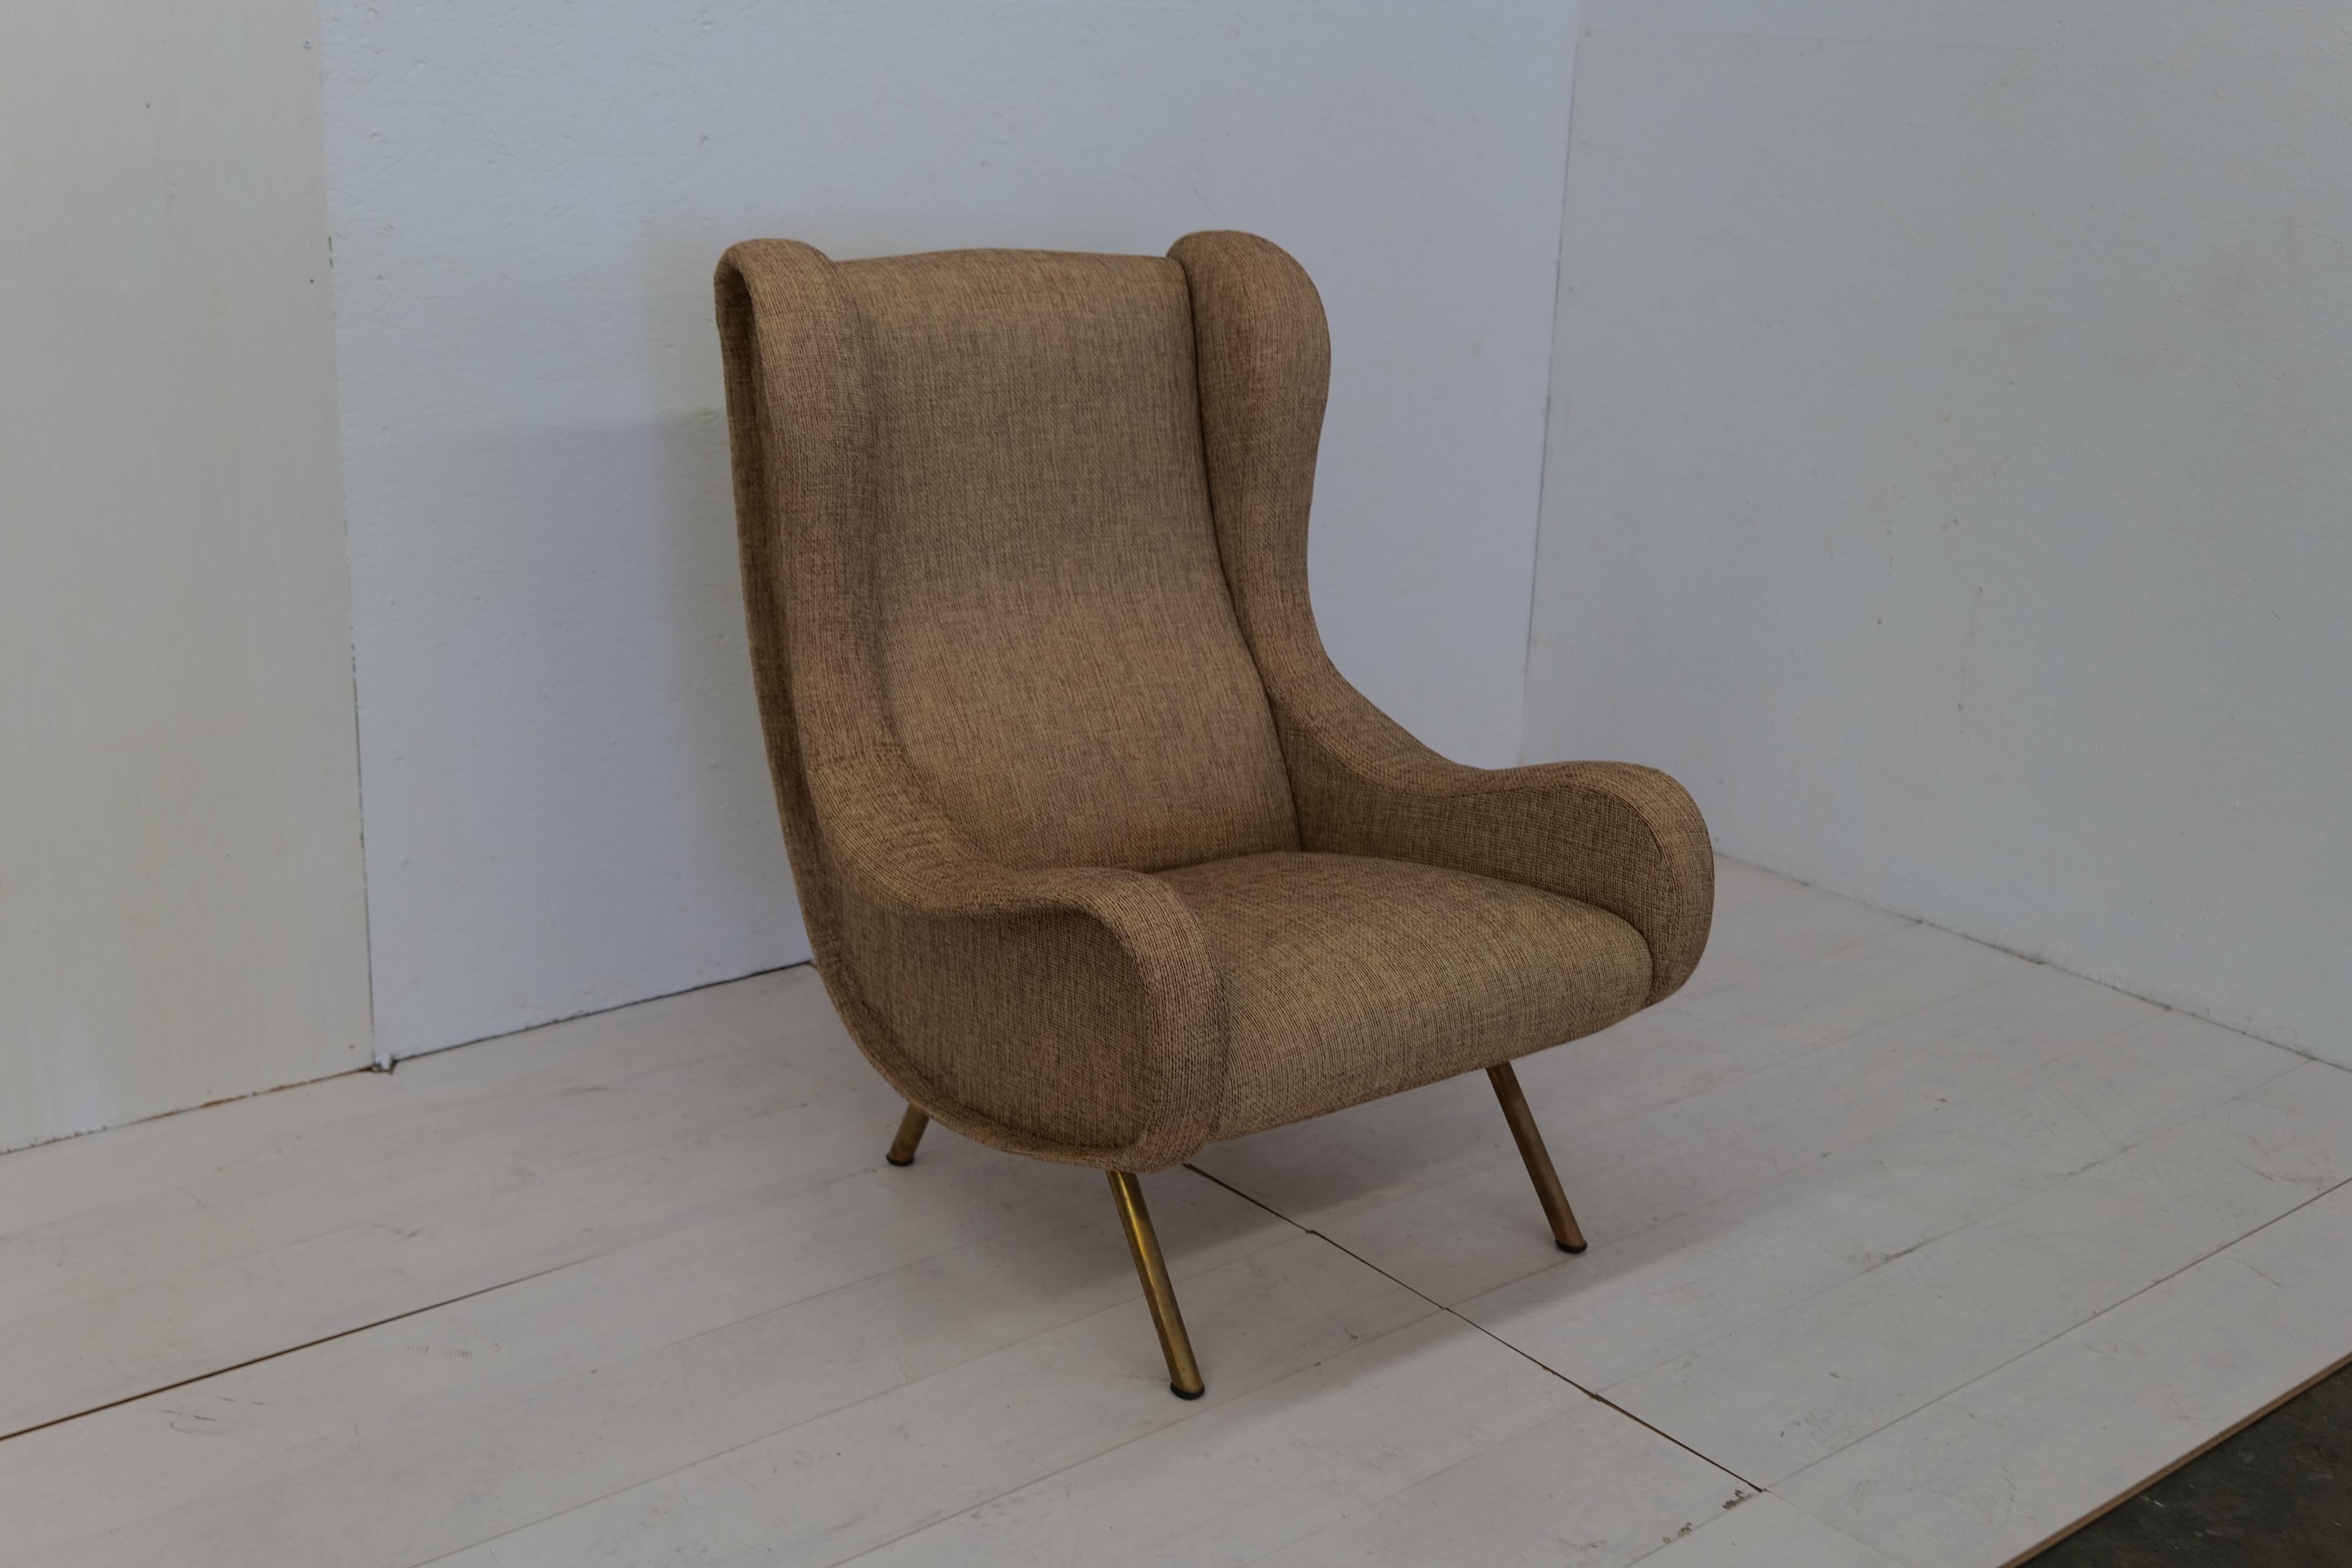 Le fauteuil Marco Zanuso Senior Armchair pour Arflex, conçu dans les années 1950, est une pièce emblématique dotée de pieds en laiton qui ajoutent une touche de luxe à son design épuré et élégant.

